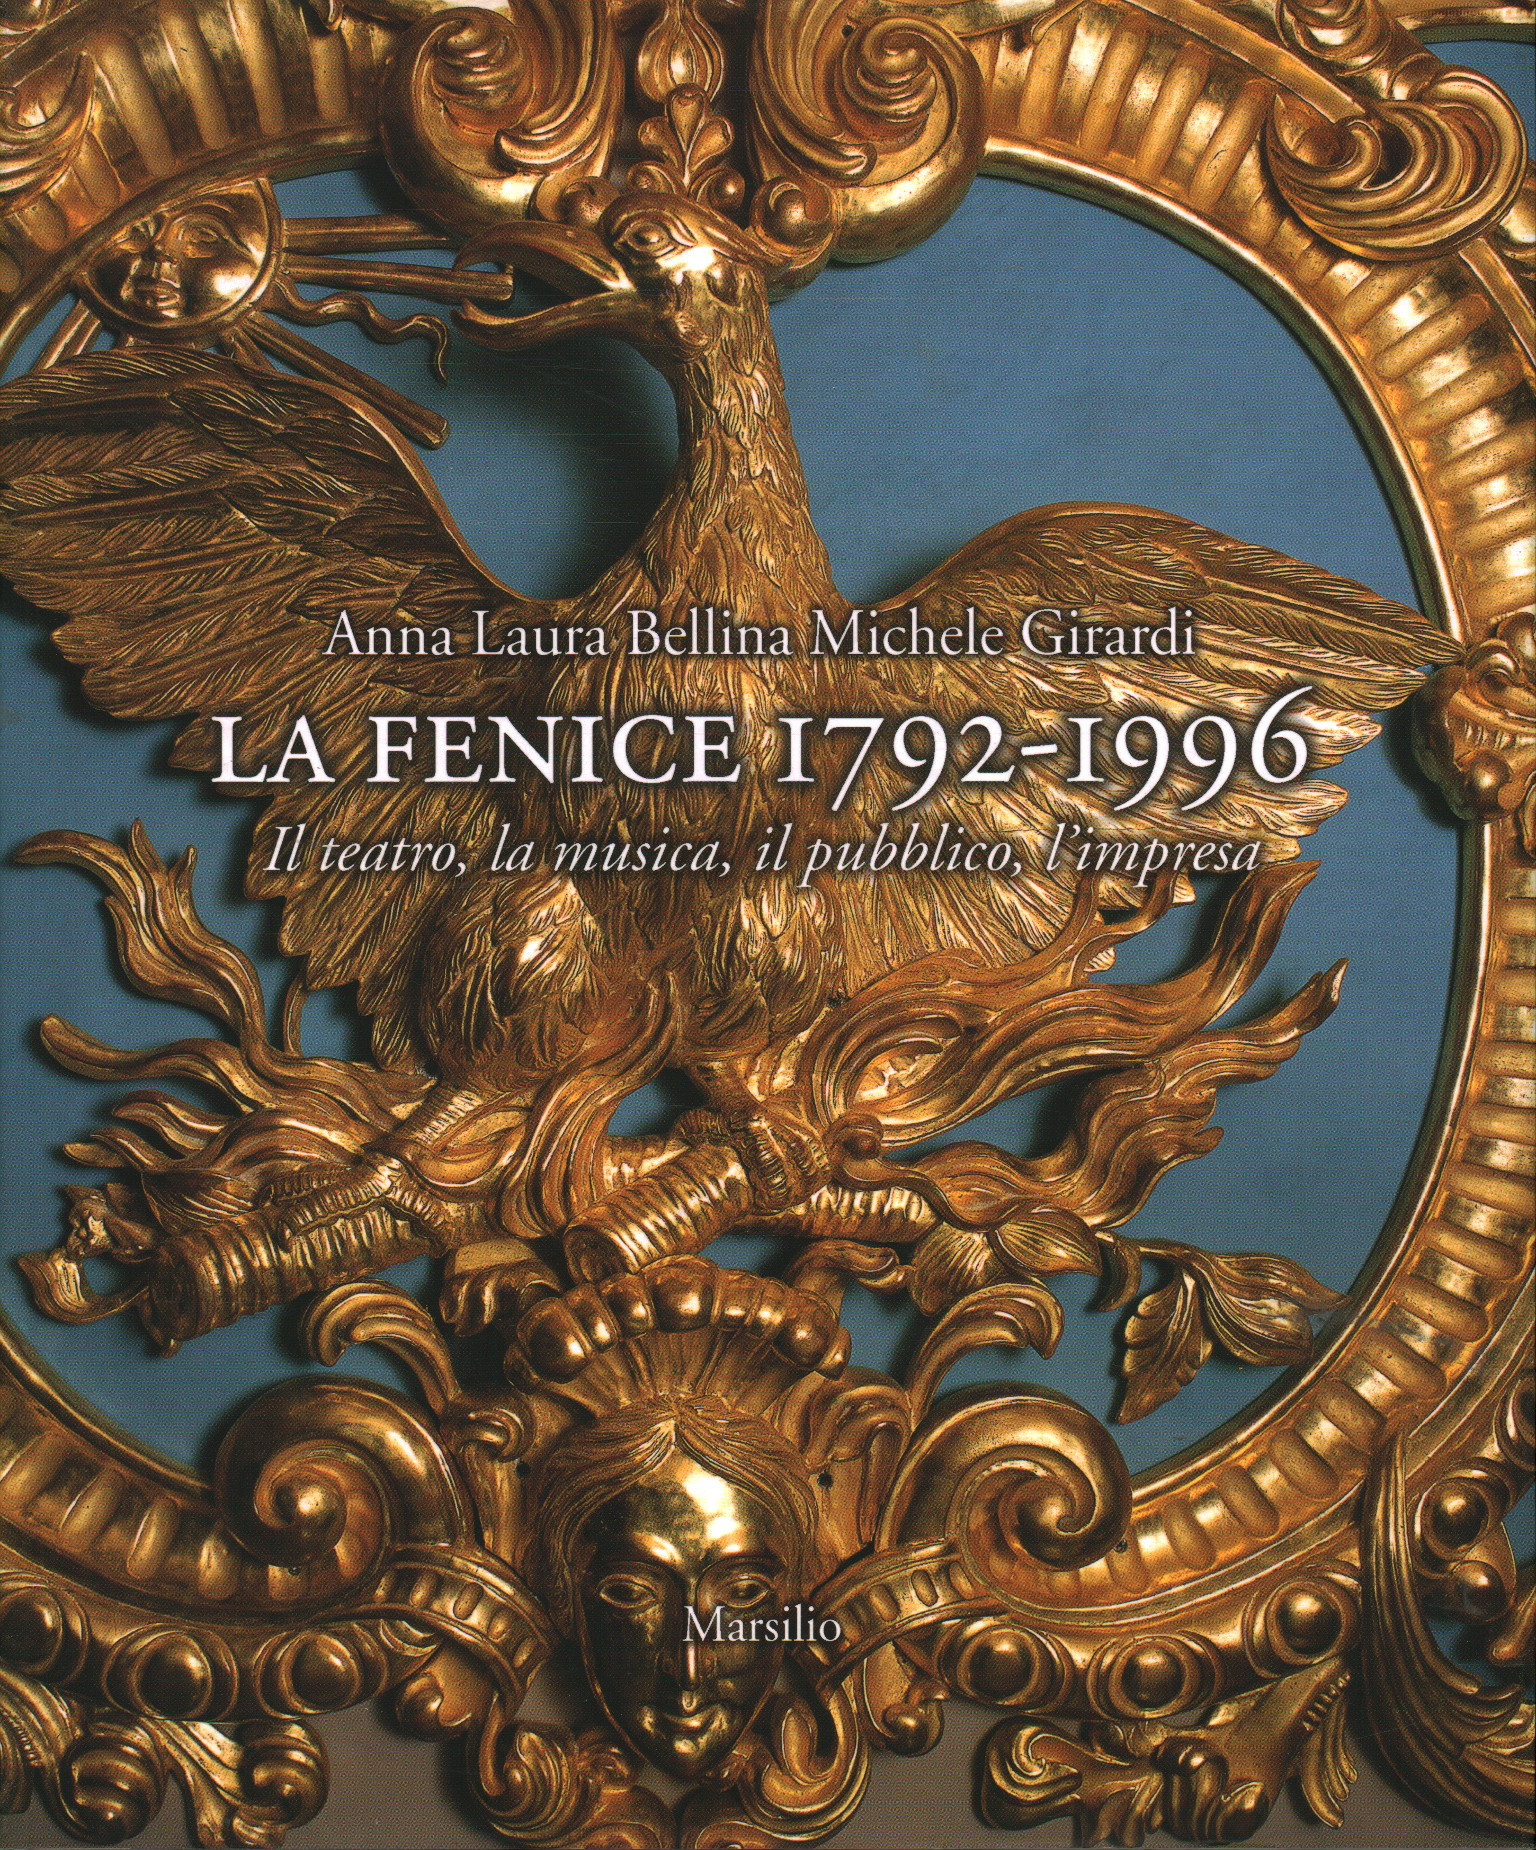 La Fenice 1792-1996, Anna Laura Bellina Michele Girardi